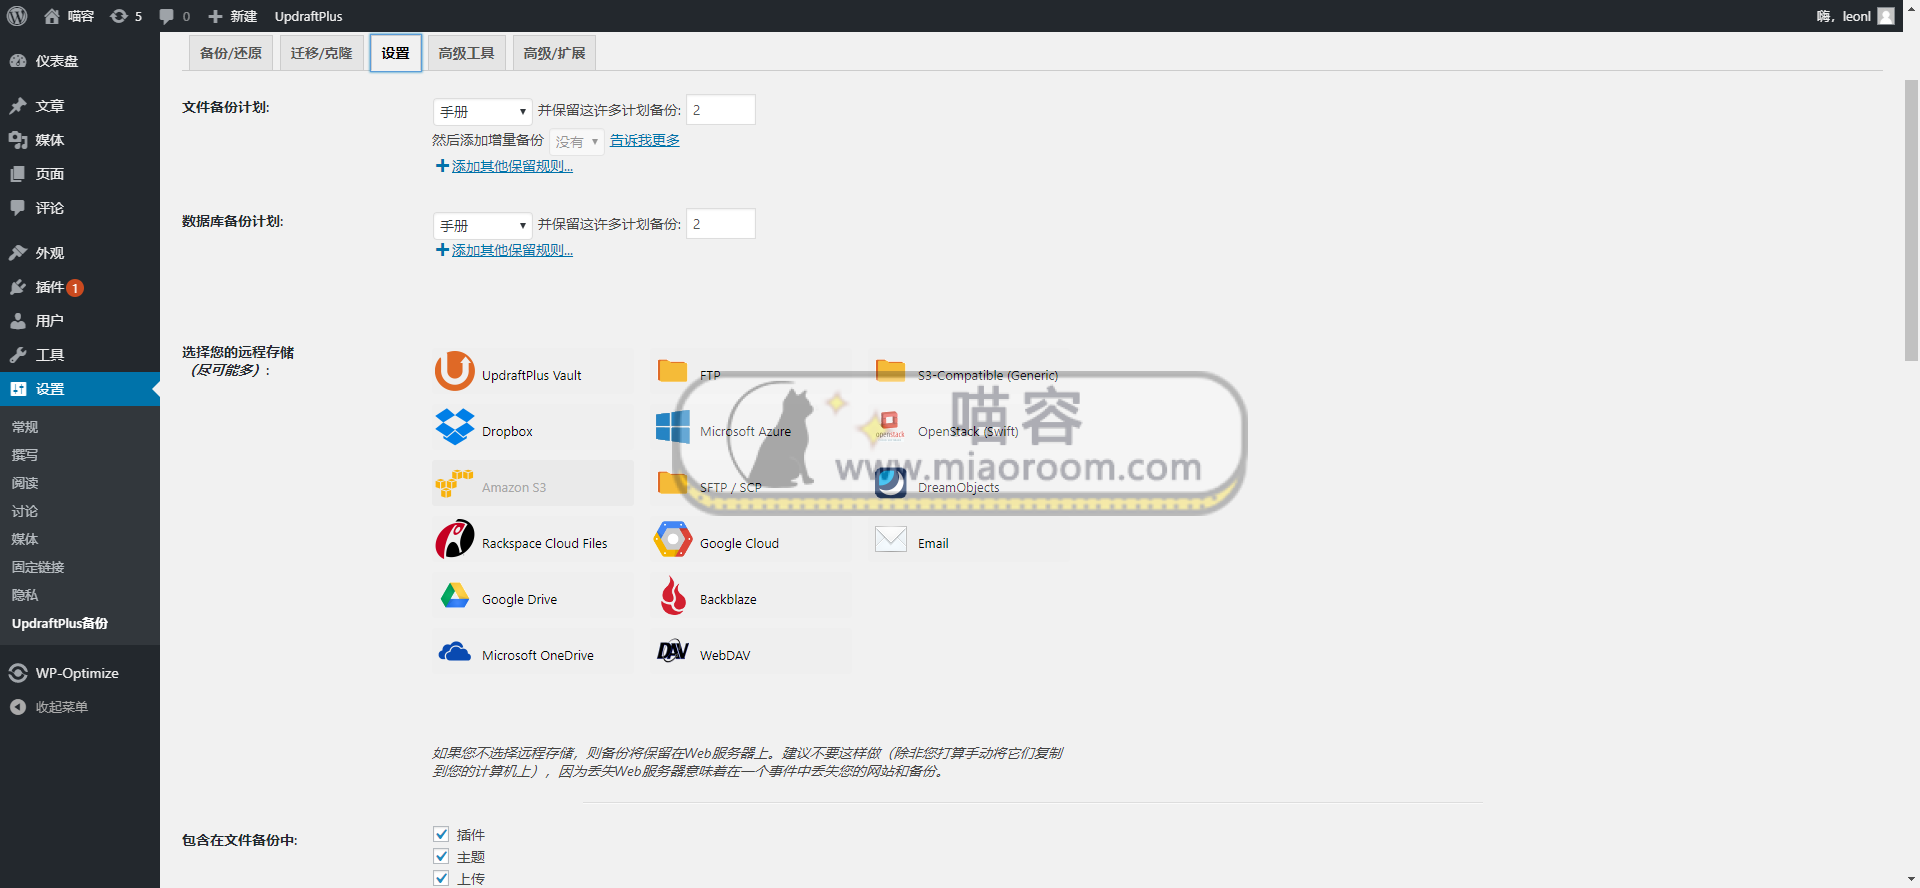 「WP插件」 WP备份迁移插件 UpdraftPlus Premium v2.16.26.24 高级版 破解专业版 【中文汉化】